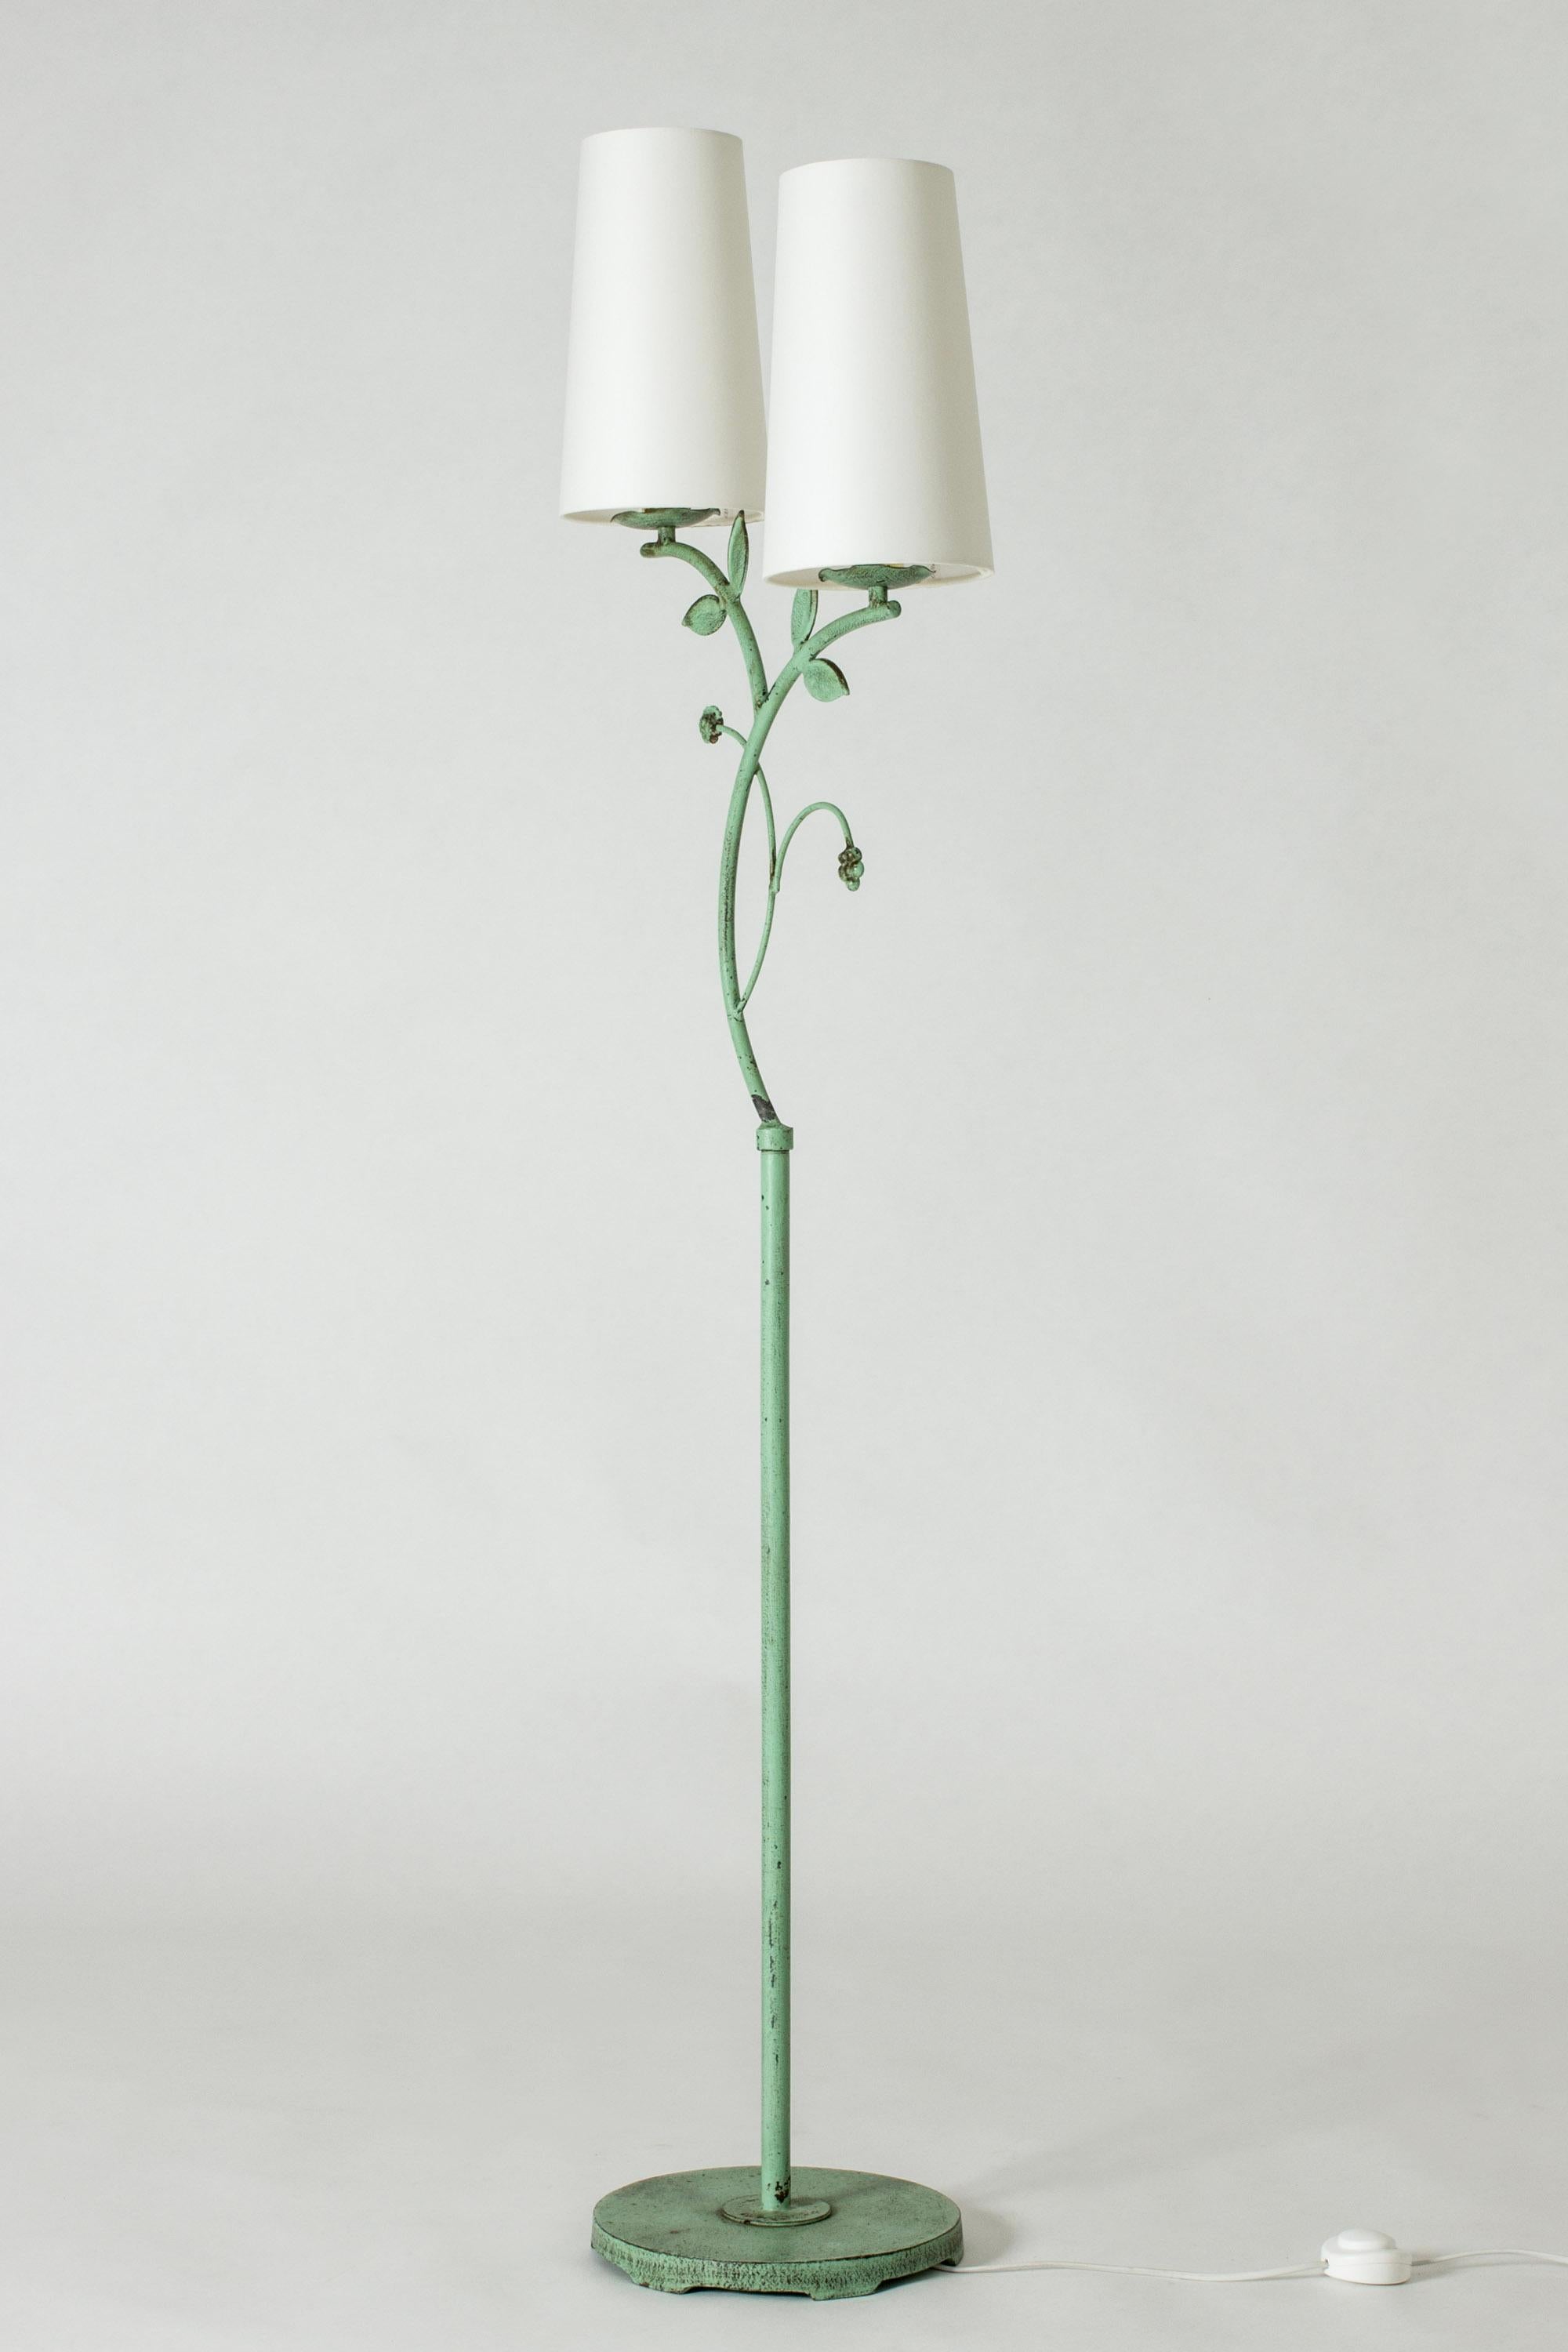 Schöne schwedische Grace Stehleuchte von Bjerkås Armatur, hergestellt aus oxidiertem, grün lackiertem Metall. Verziert mit Blättern und Blumen.